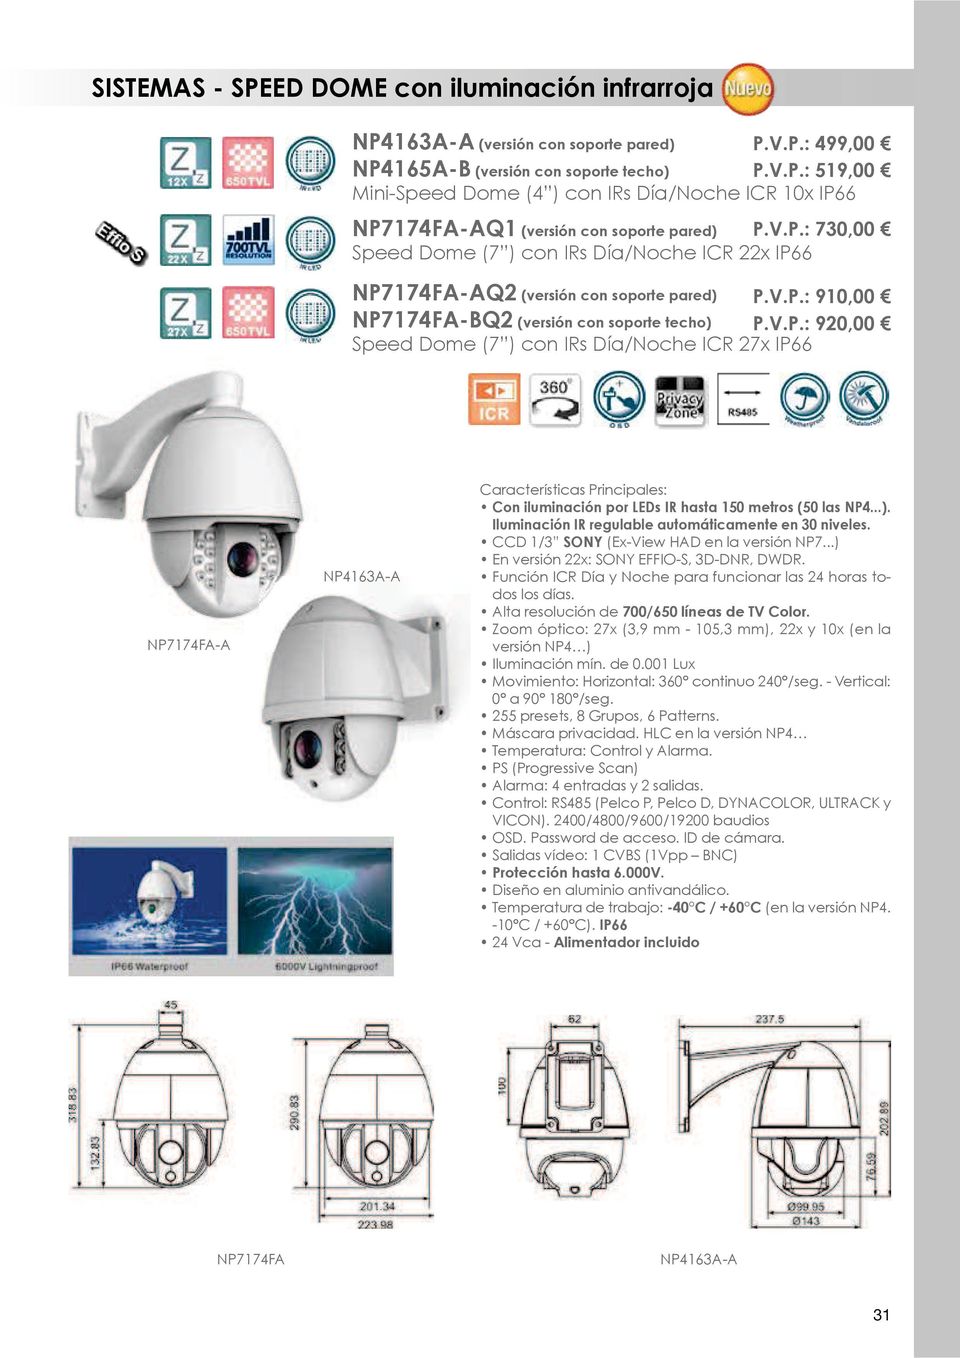 ..). Iluminación IR regulable automáticamente en 30 niveles. CCD 1/3 SONY (Ex-View HAD en la versión NP7...) En versión 22x: SONY EFFIO-S, 3D-DNR, DWDR.